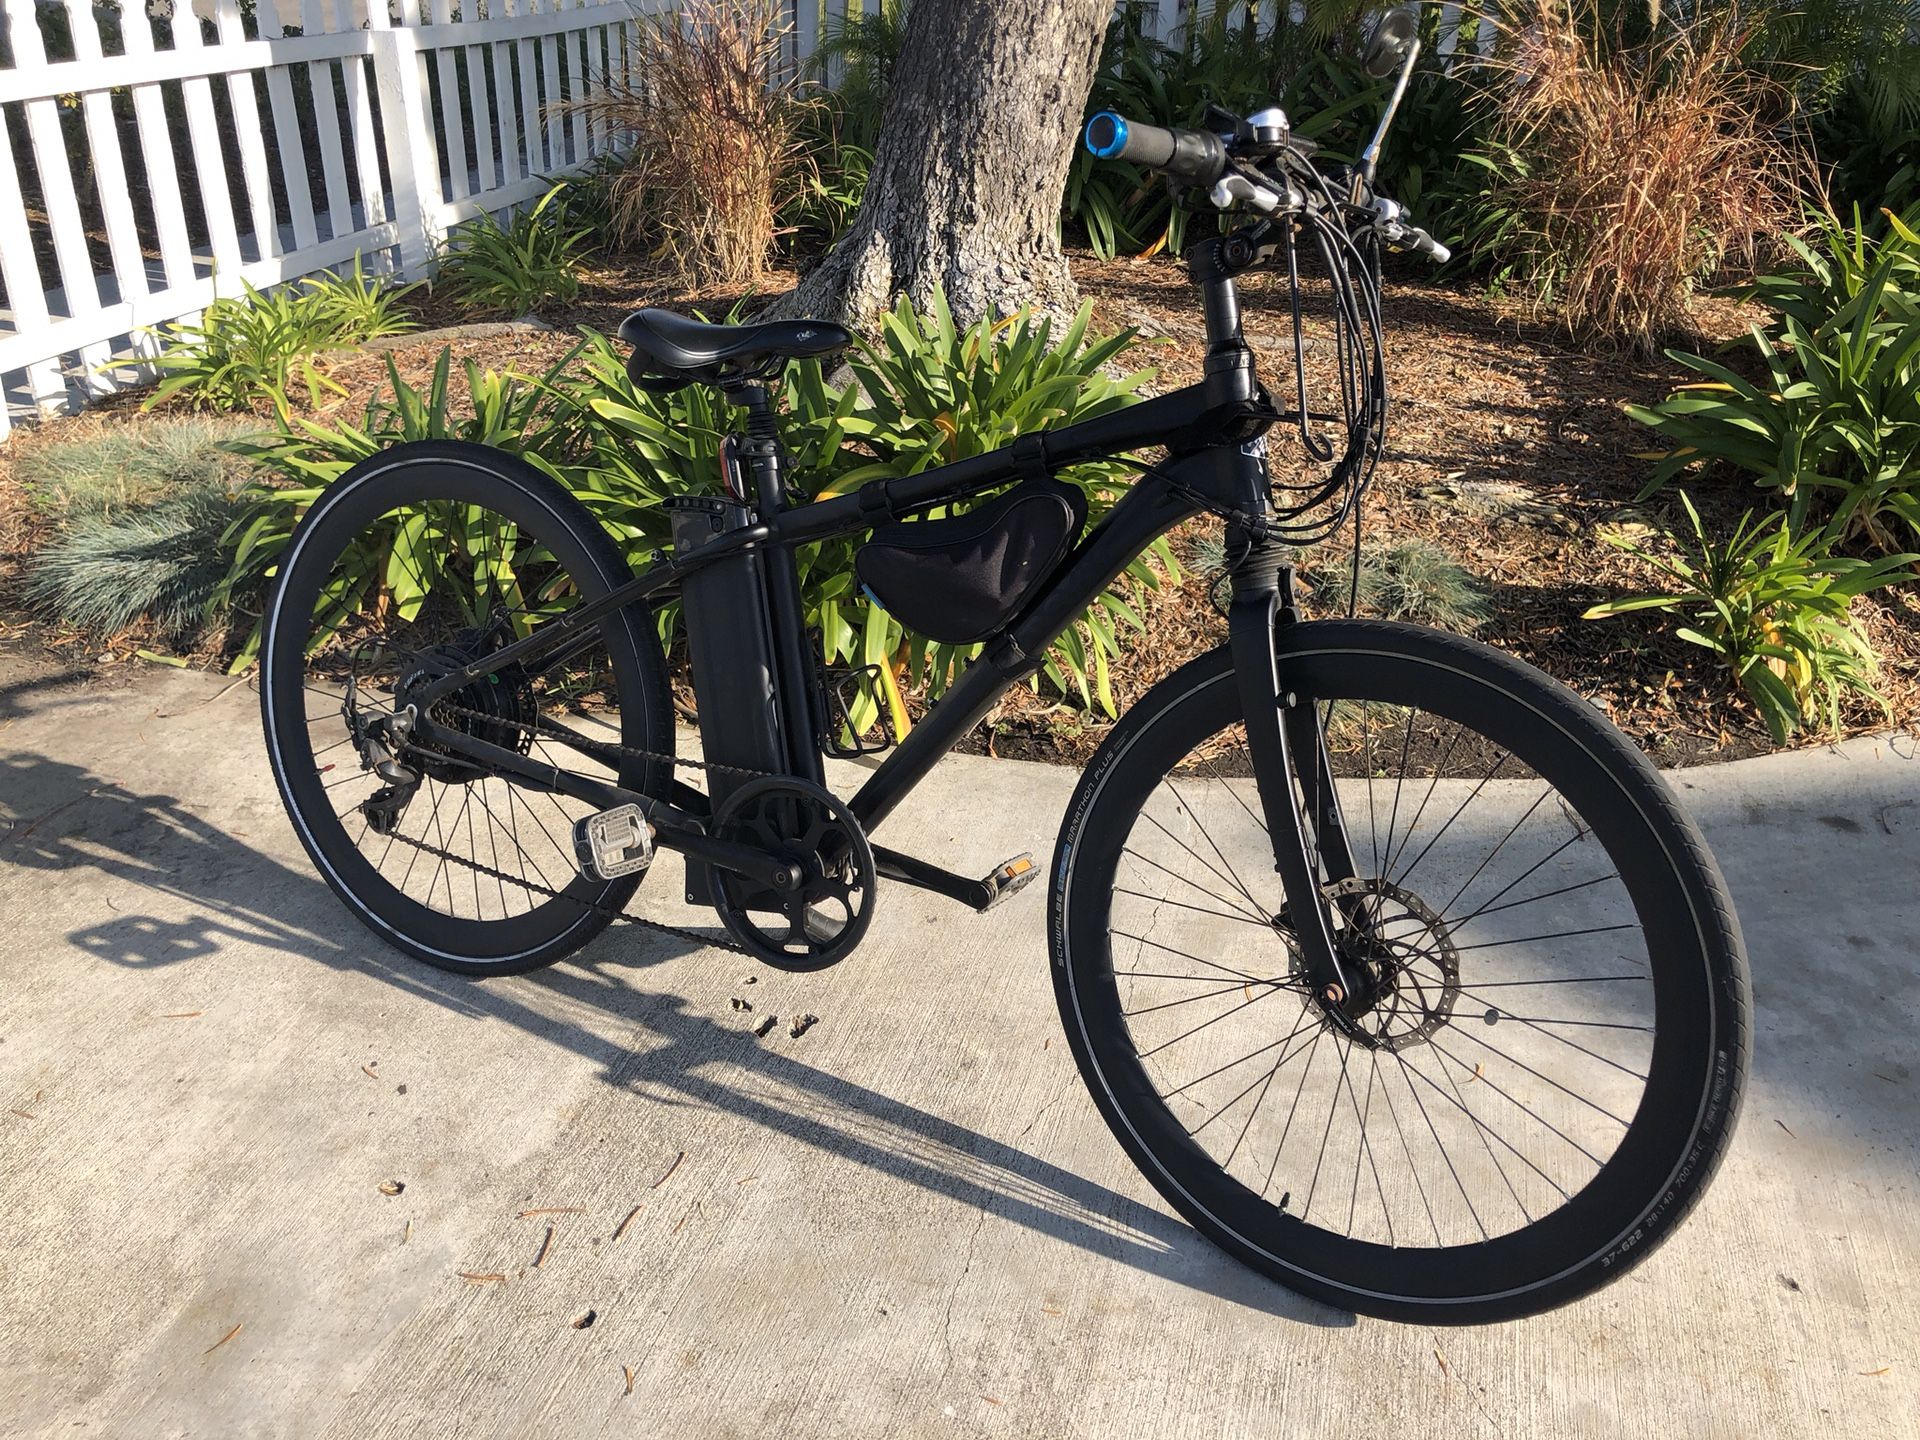 Motiv Shadow E-Bike for sale $750